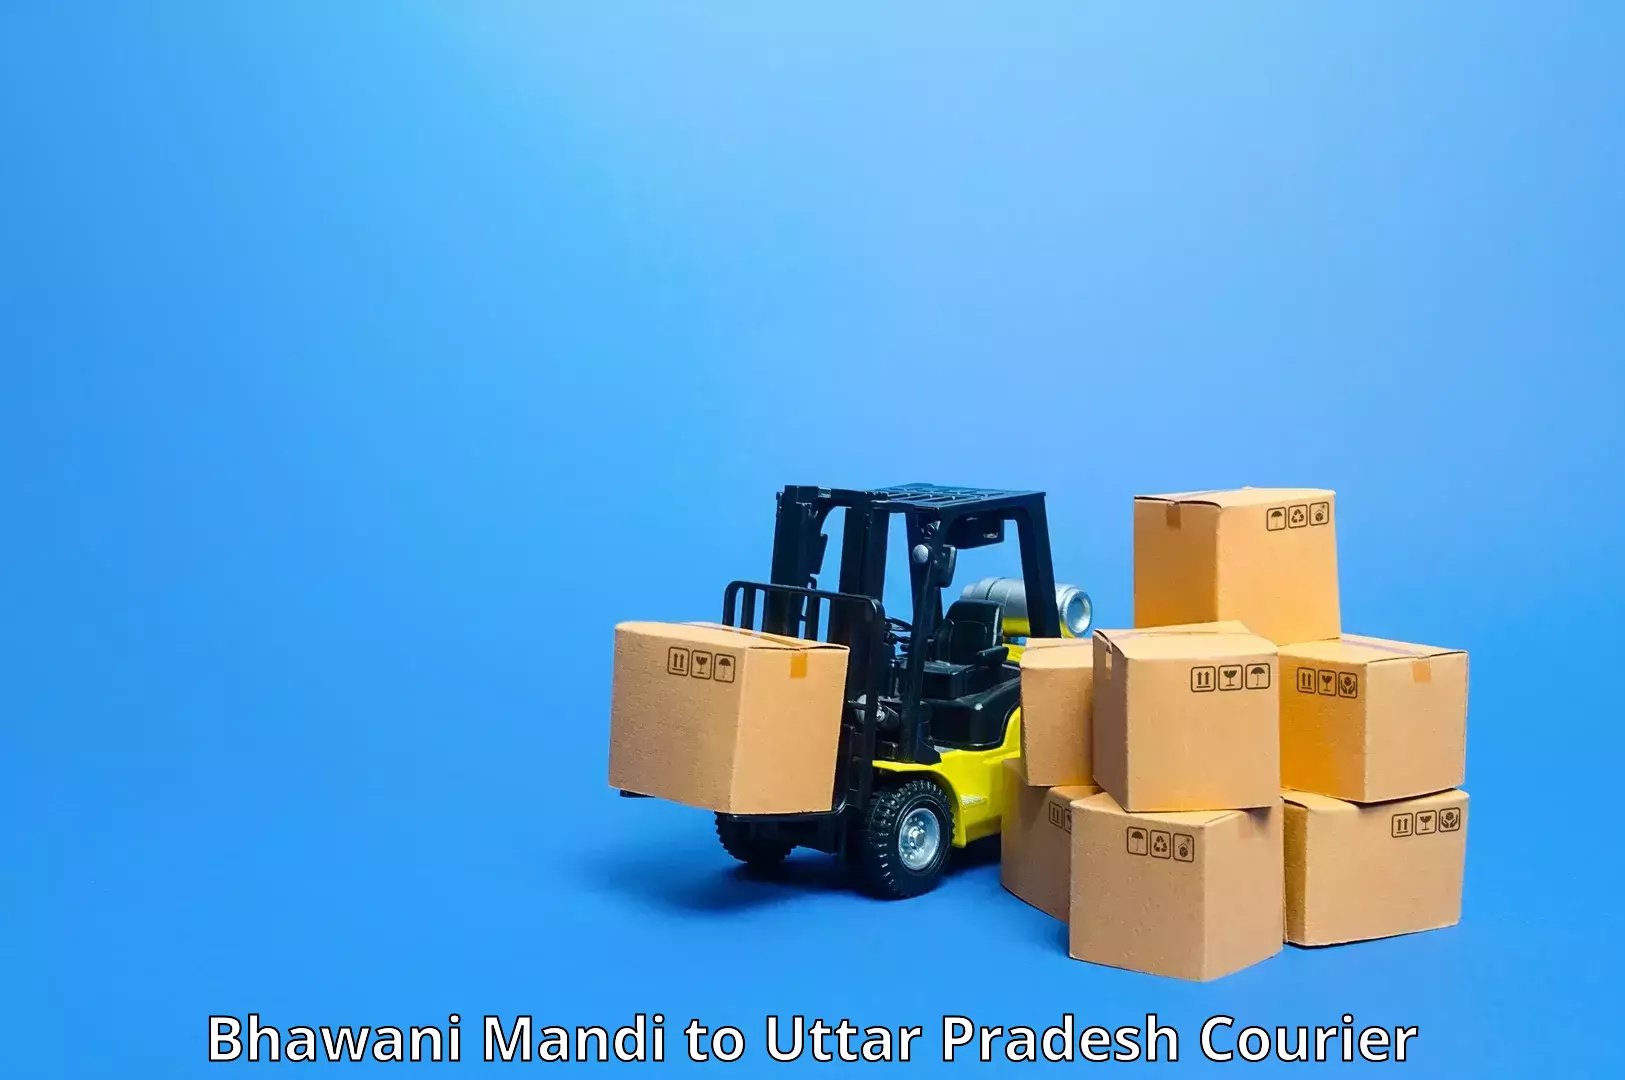 Courier app in Bhawani Mandi to Bhadohi